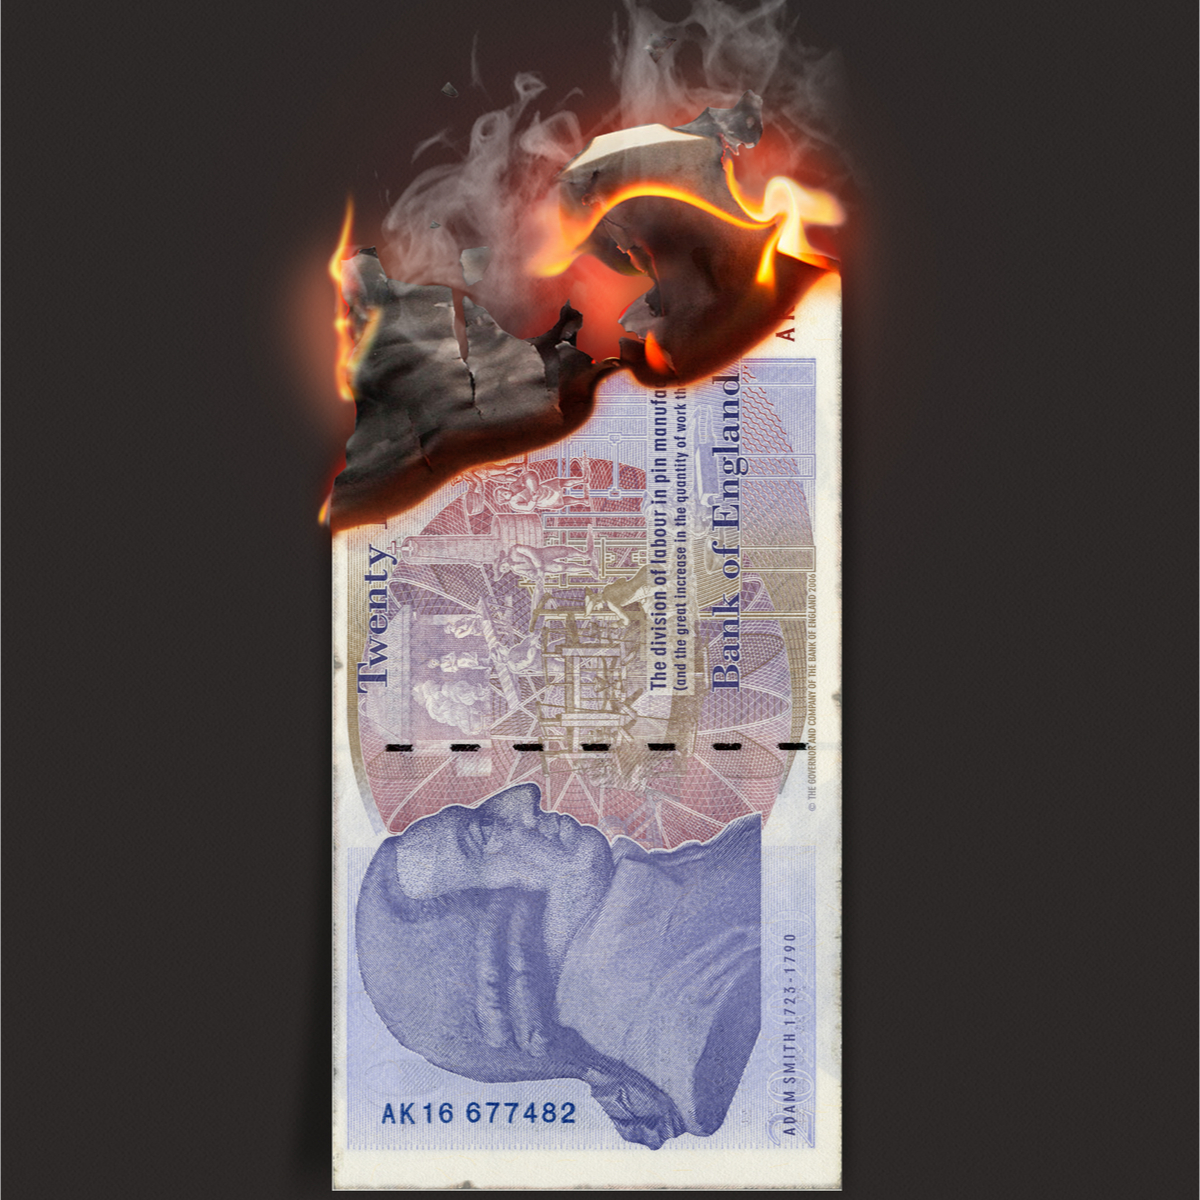 Inflation burning money